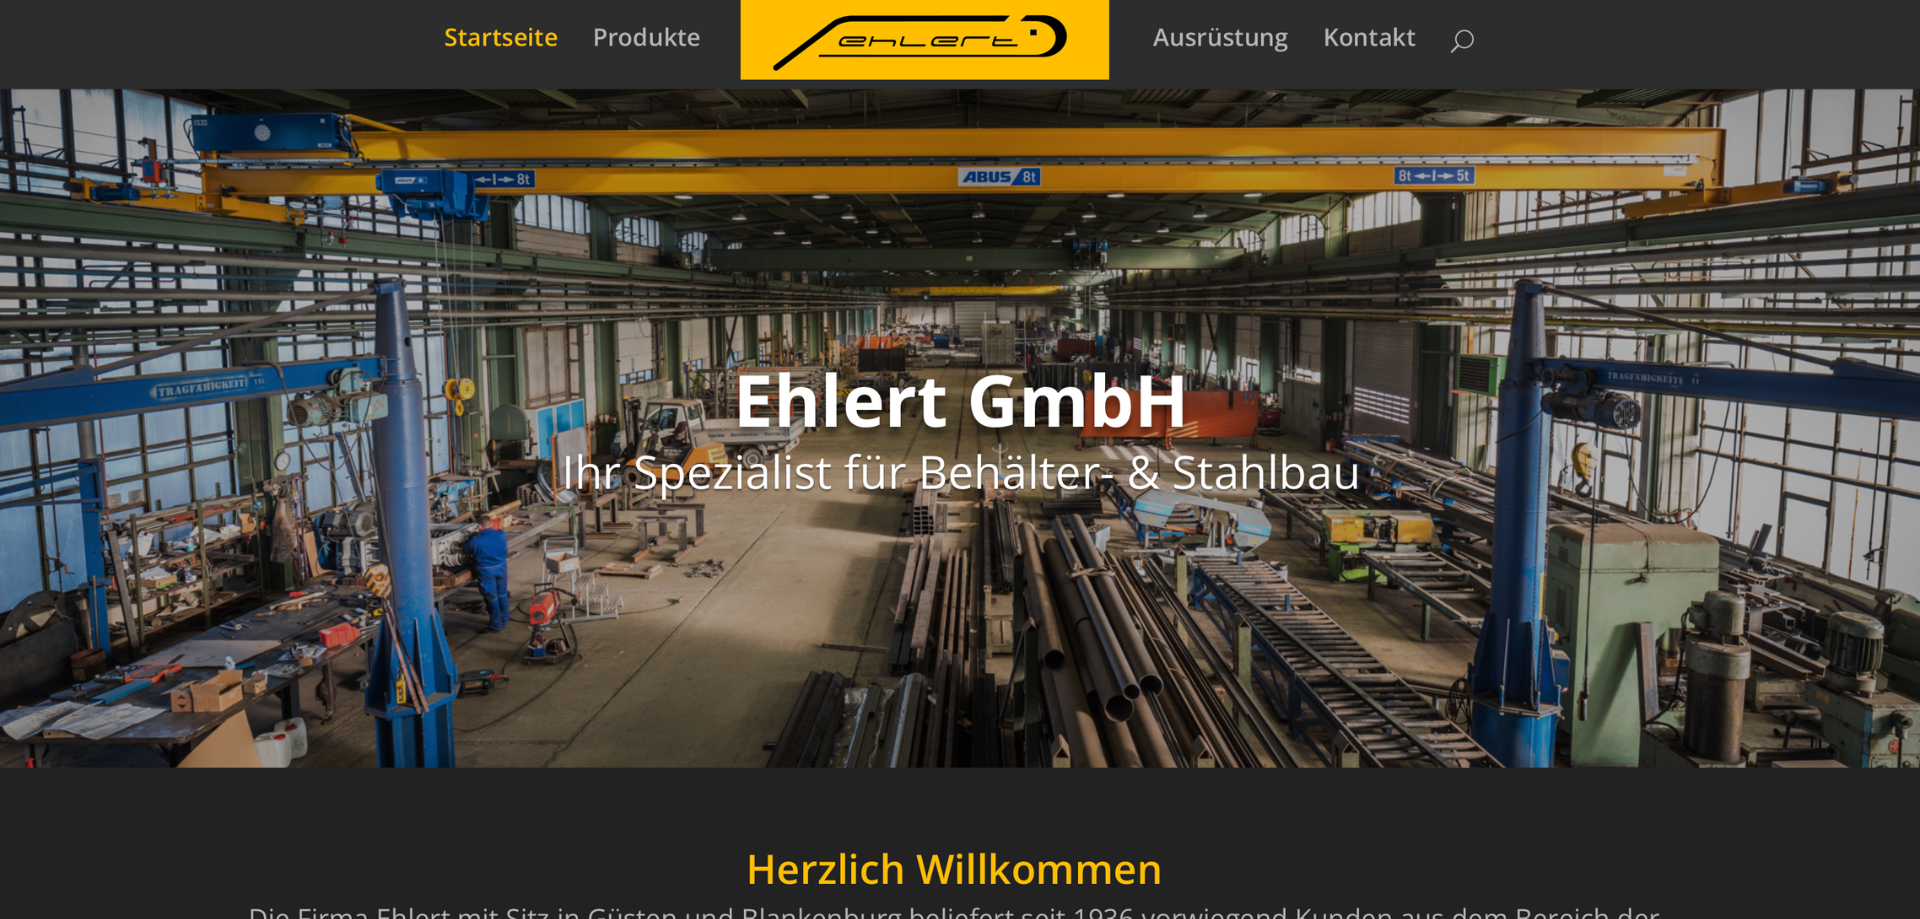 website des stahlbauers ehlert